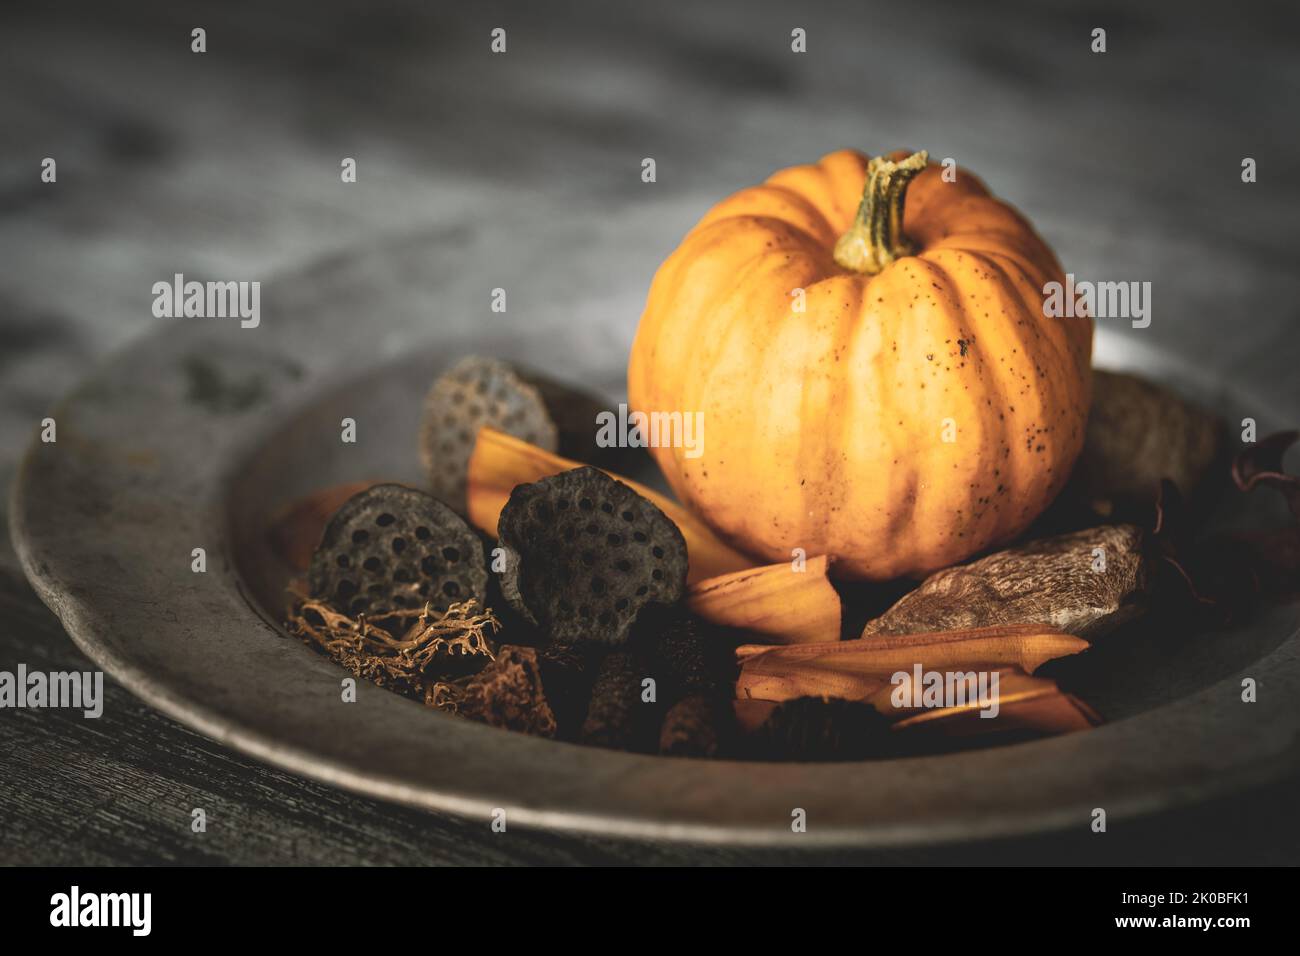 Herbstliche Anordnung von reifen frischen Kürbis, trockenen Blumen und anderen organischen trockenen Gegenständen auf einem rustikalen Silberteller und einer grungigen Tischplatte. Stockfoto